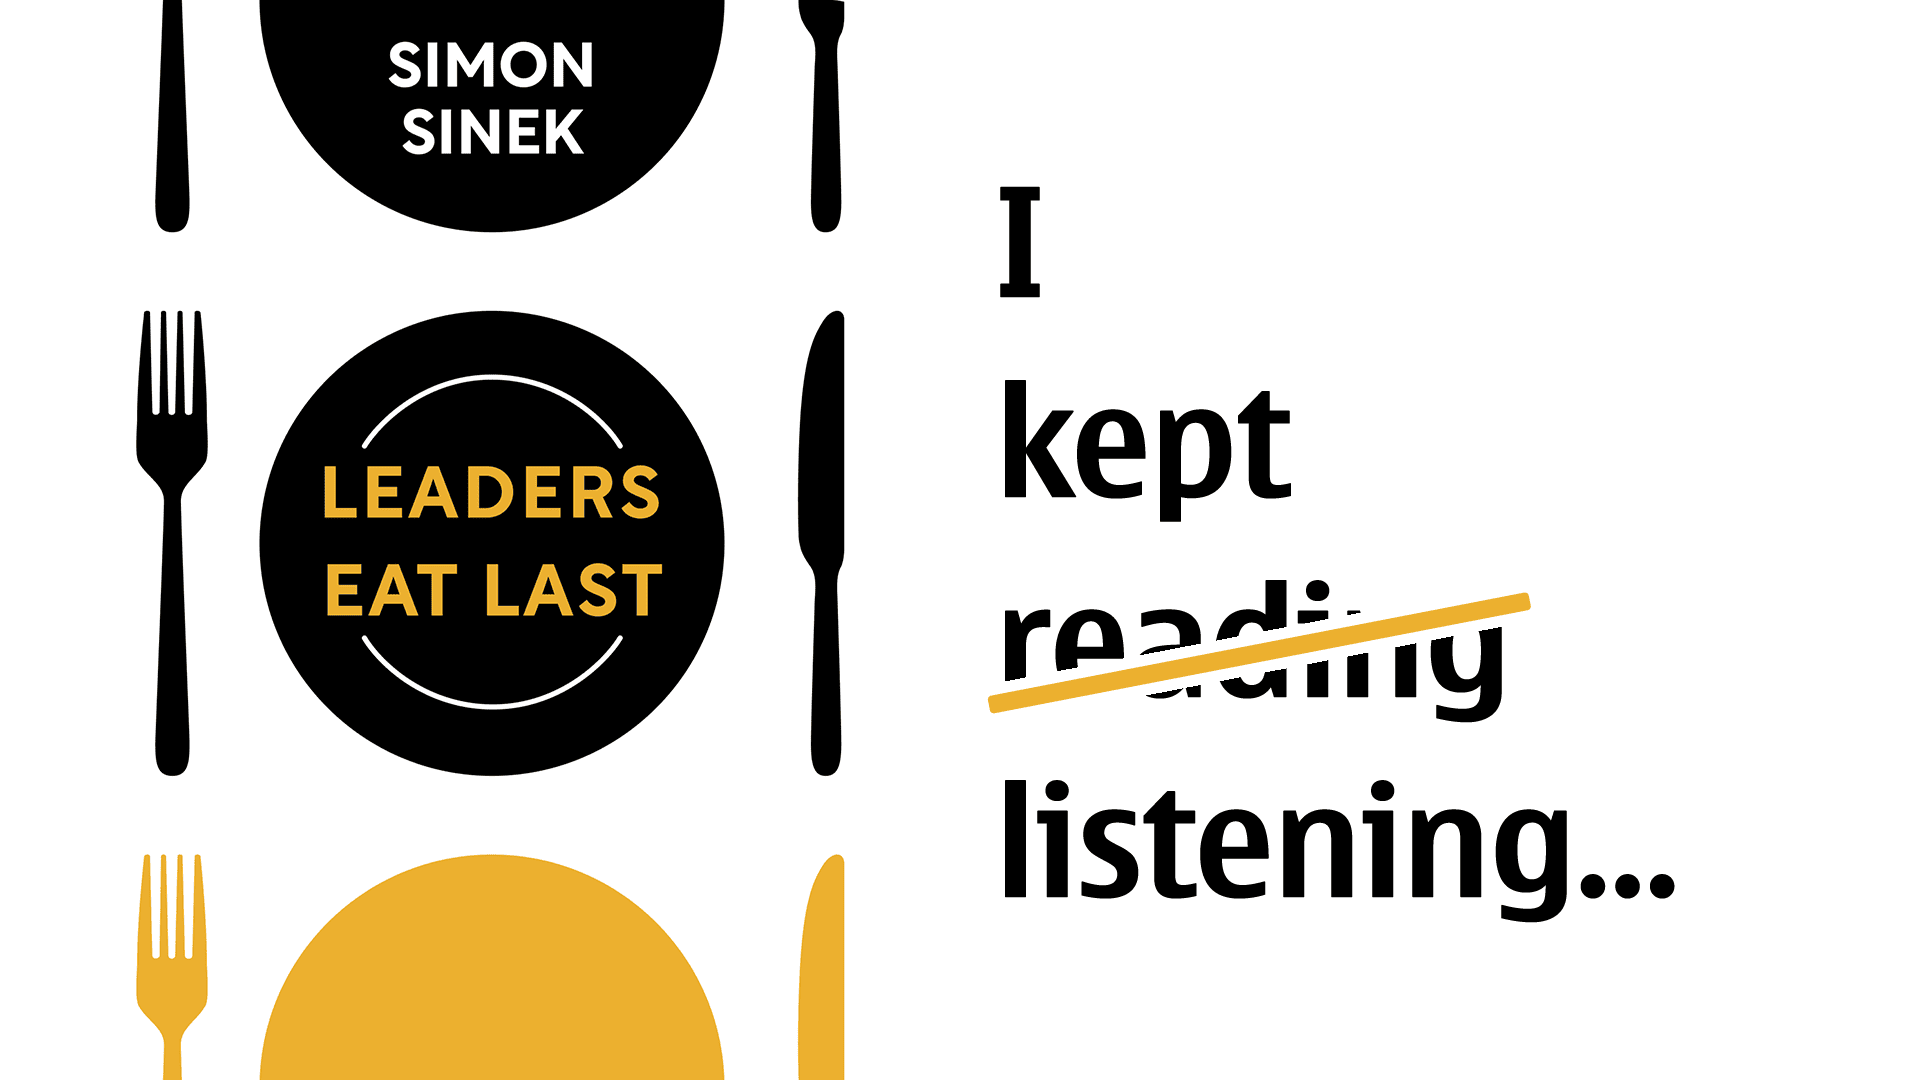 I kept (reading) listening...